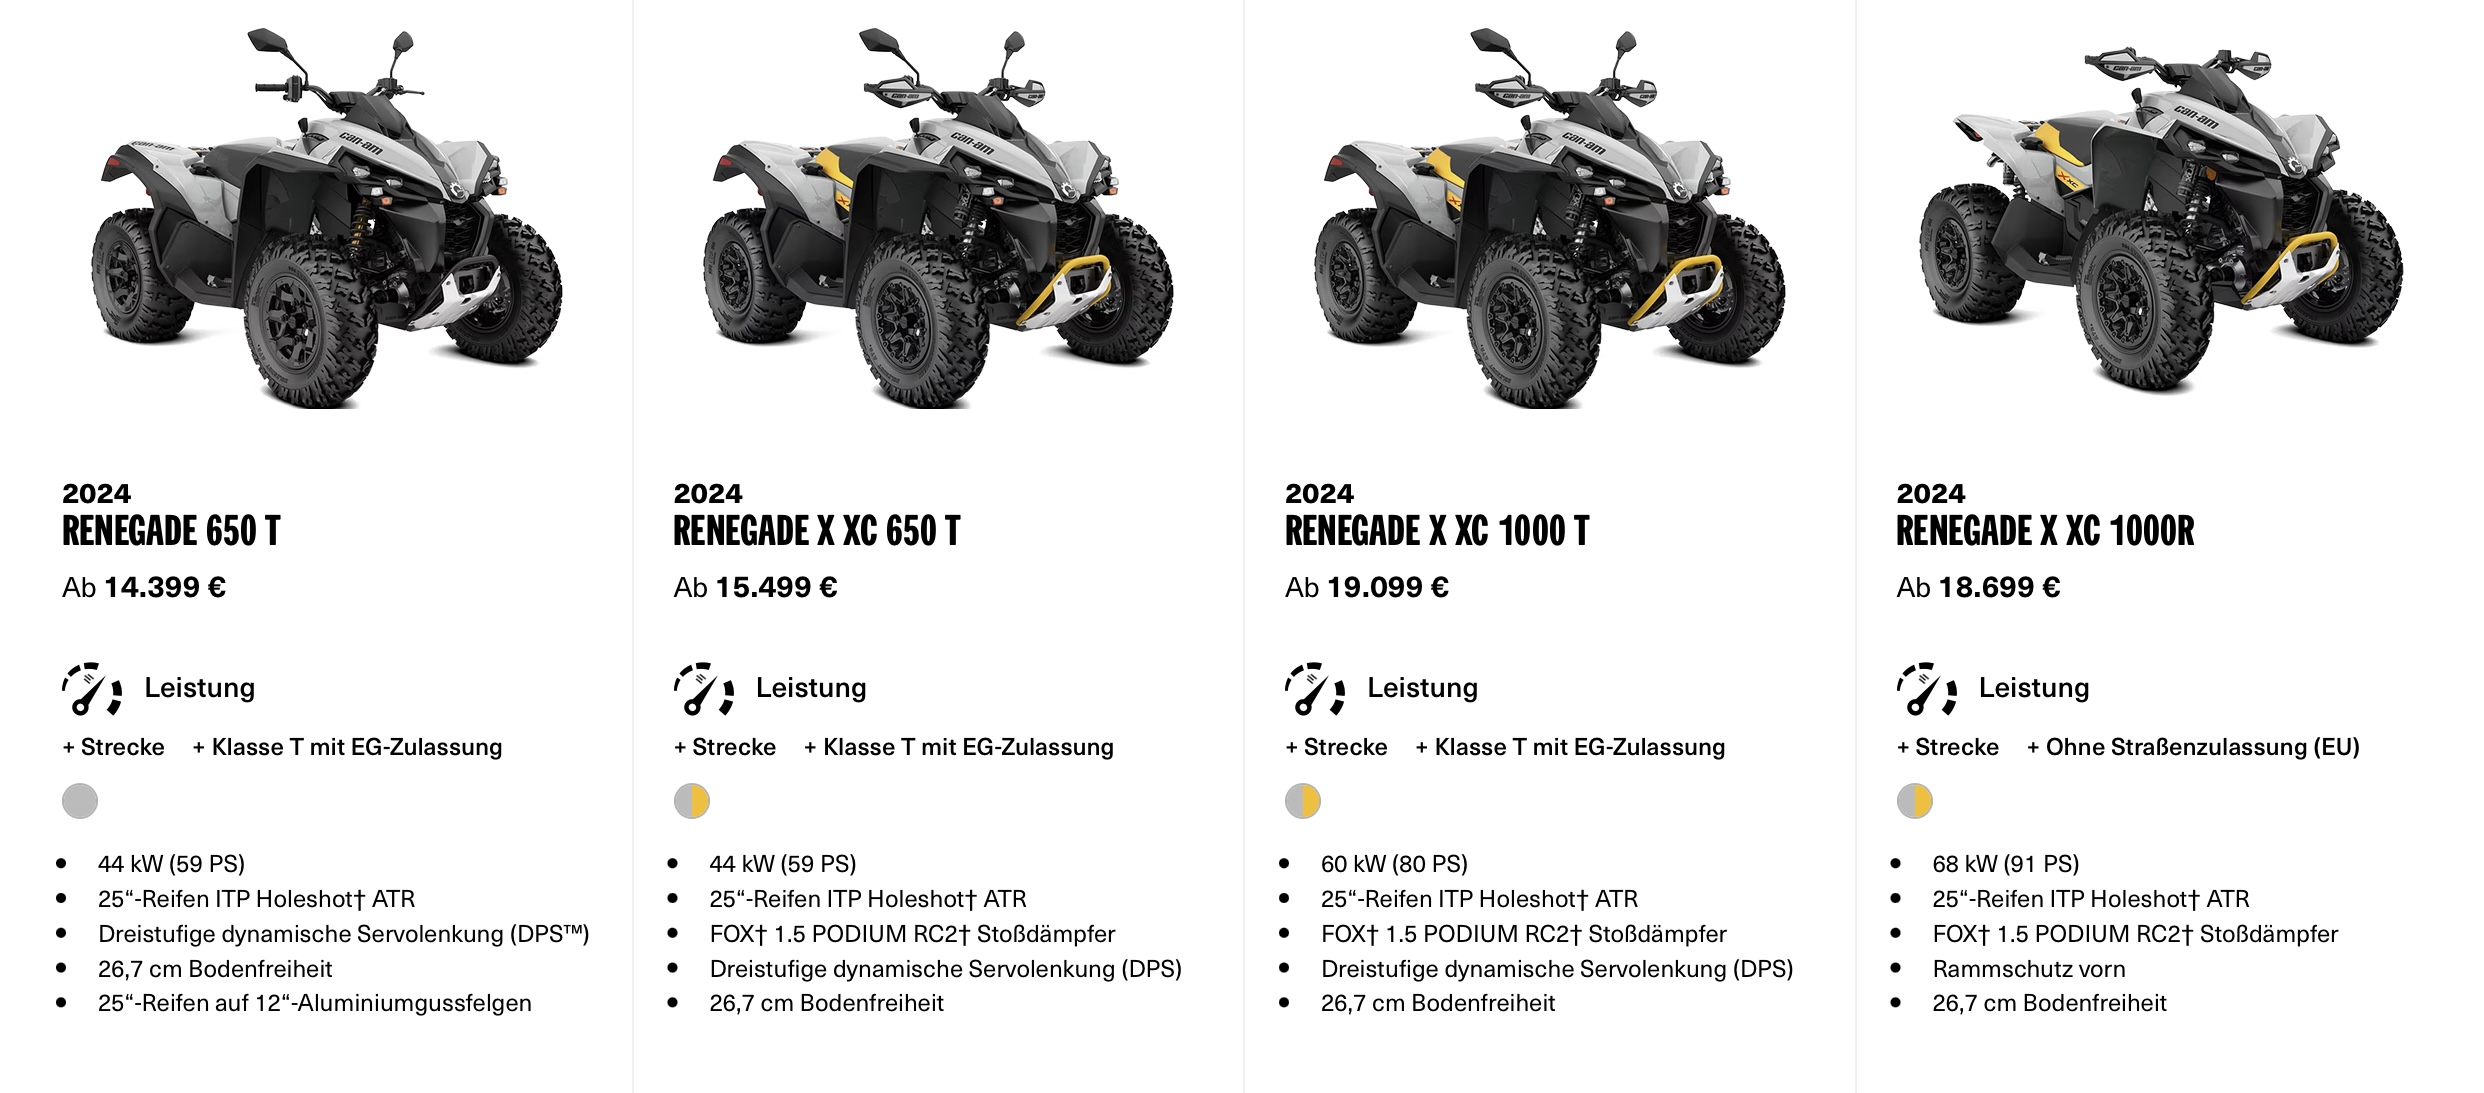 Angebot Canam ATV 2024 Renegade 1000 XXC Bei Vertragshändler Weinand Kolker Ochtendung